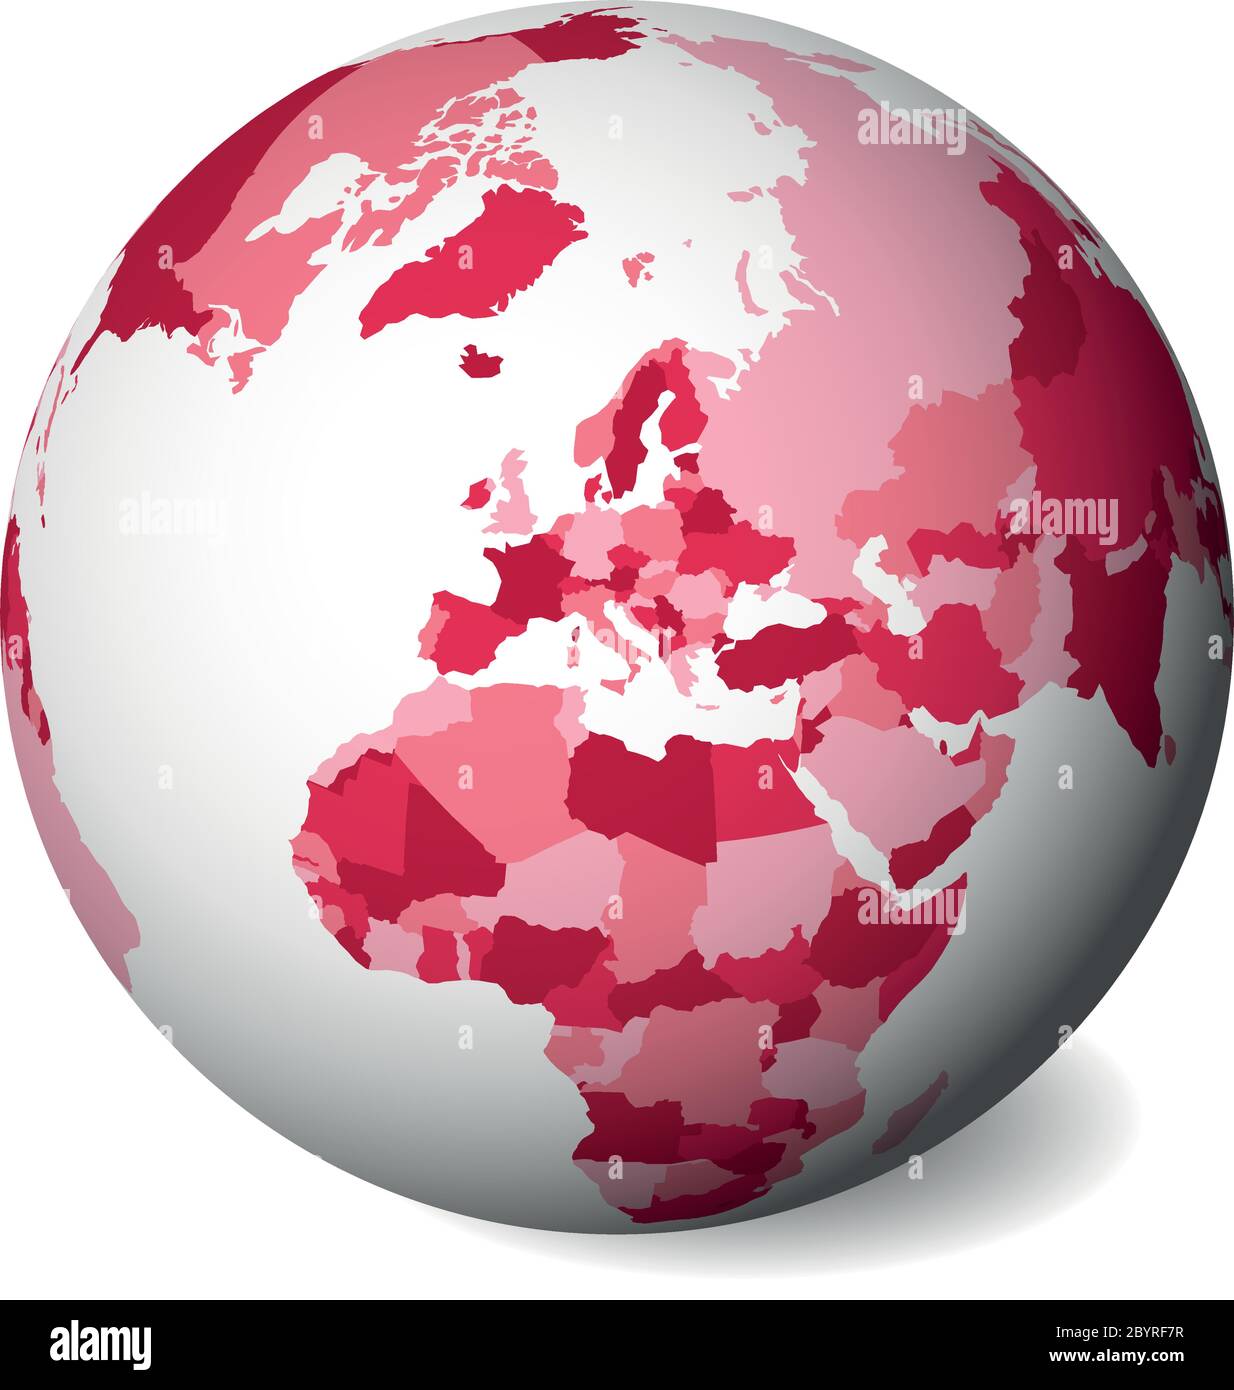 Carta politica vuota dell'Europa. Globo terrestre 3D con mappa rosa. Illustrazione vettoriale. Illustrazione Vettoriale